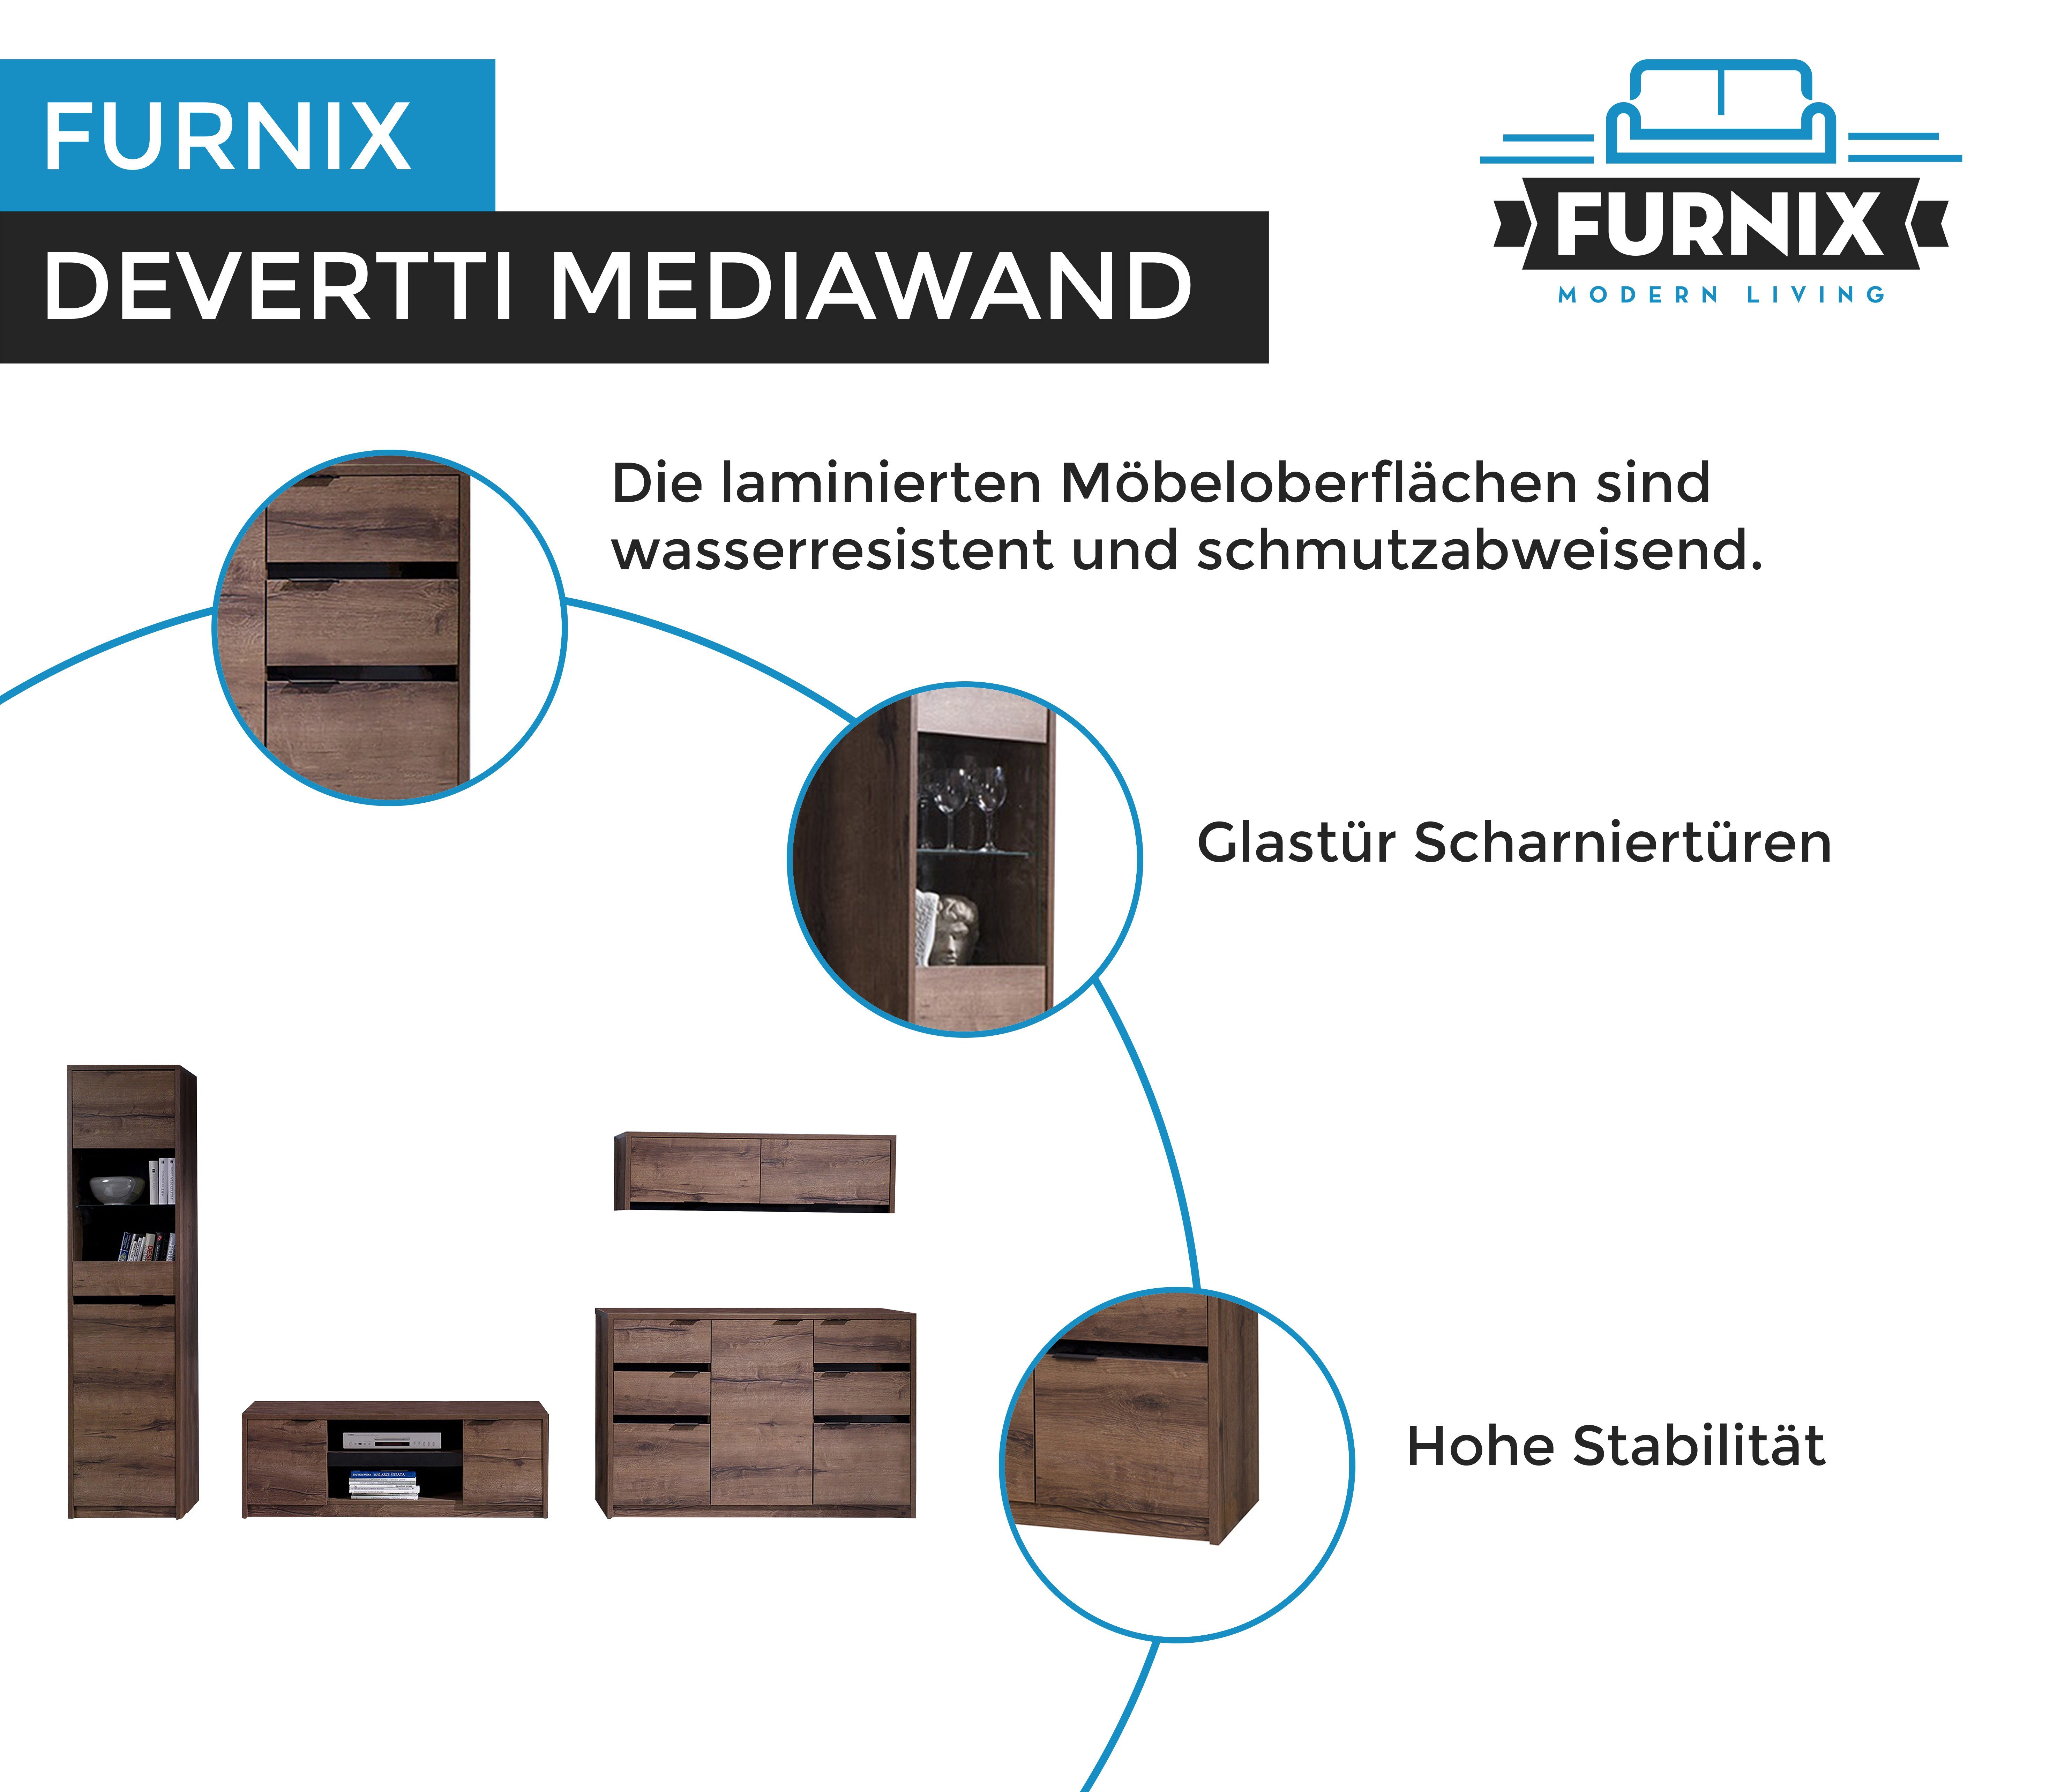 4-teilige TV-Schrank, Wandschrank, Monastery/Schwarz Vitrine, Möbelwand Wohnwand 3 Furnix Mediawand Glanz, DEVERTTI Kommode